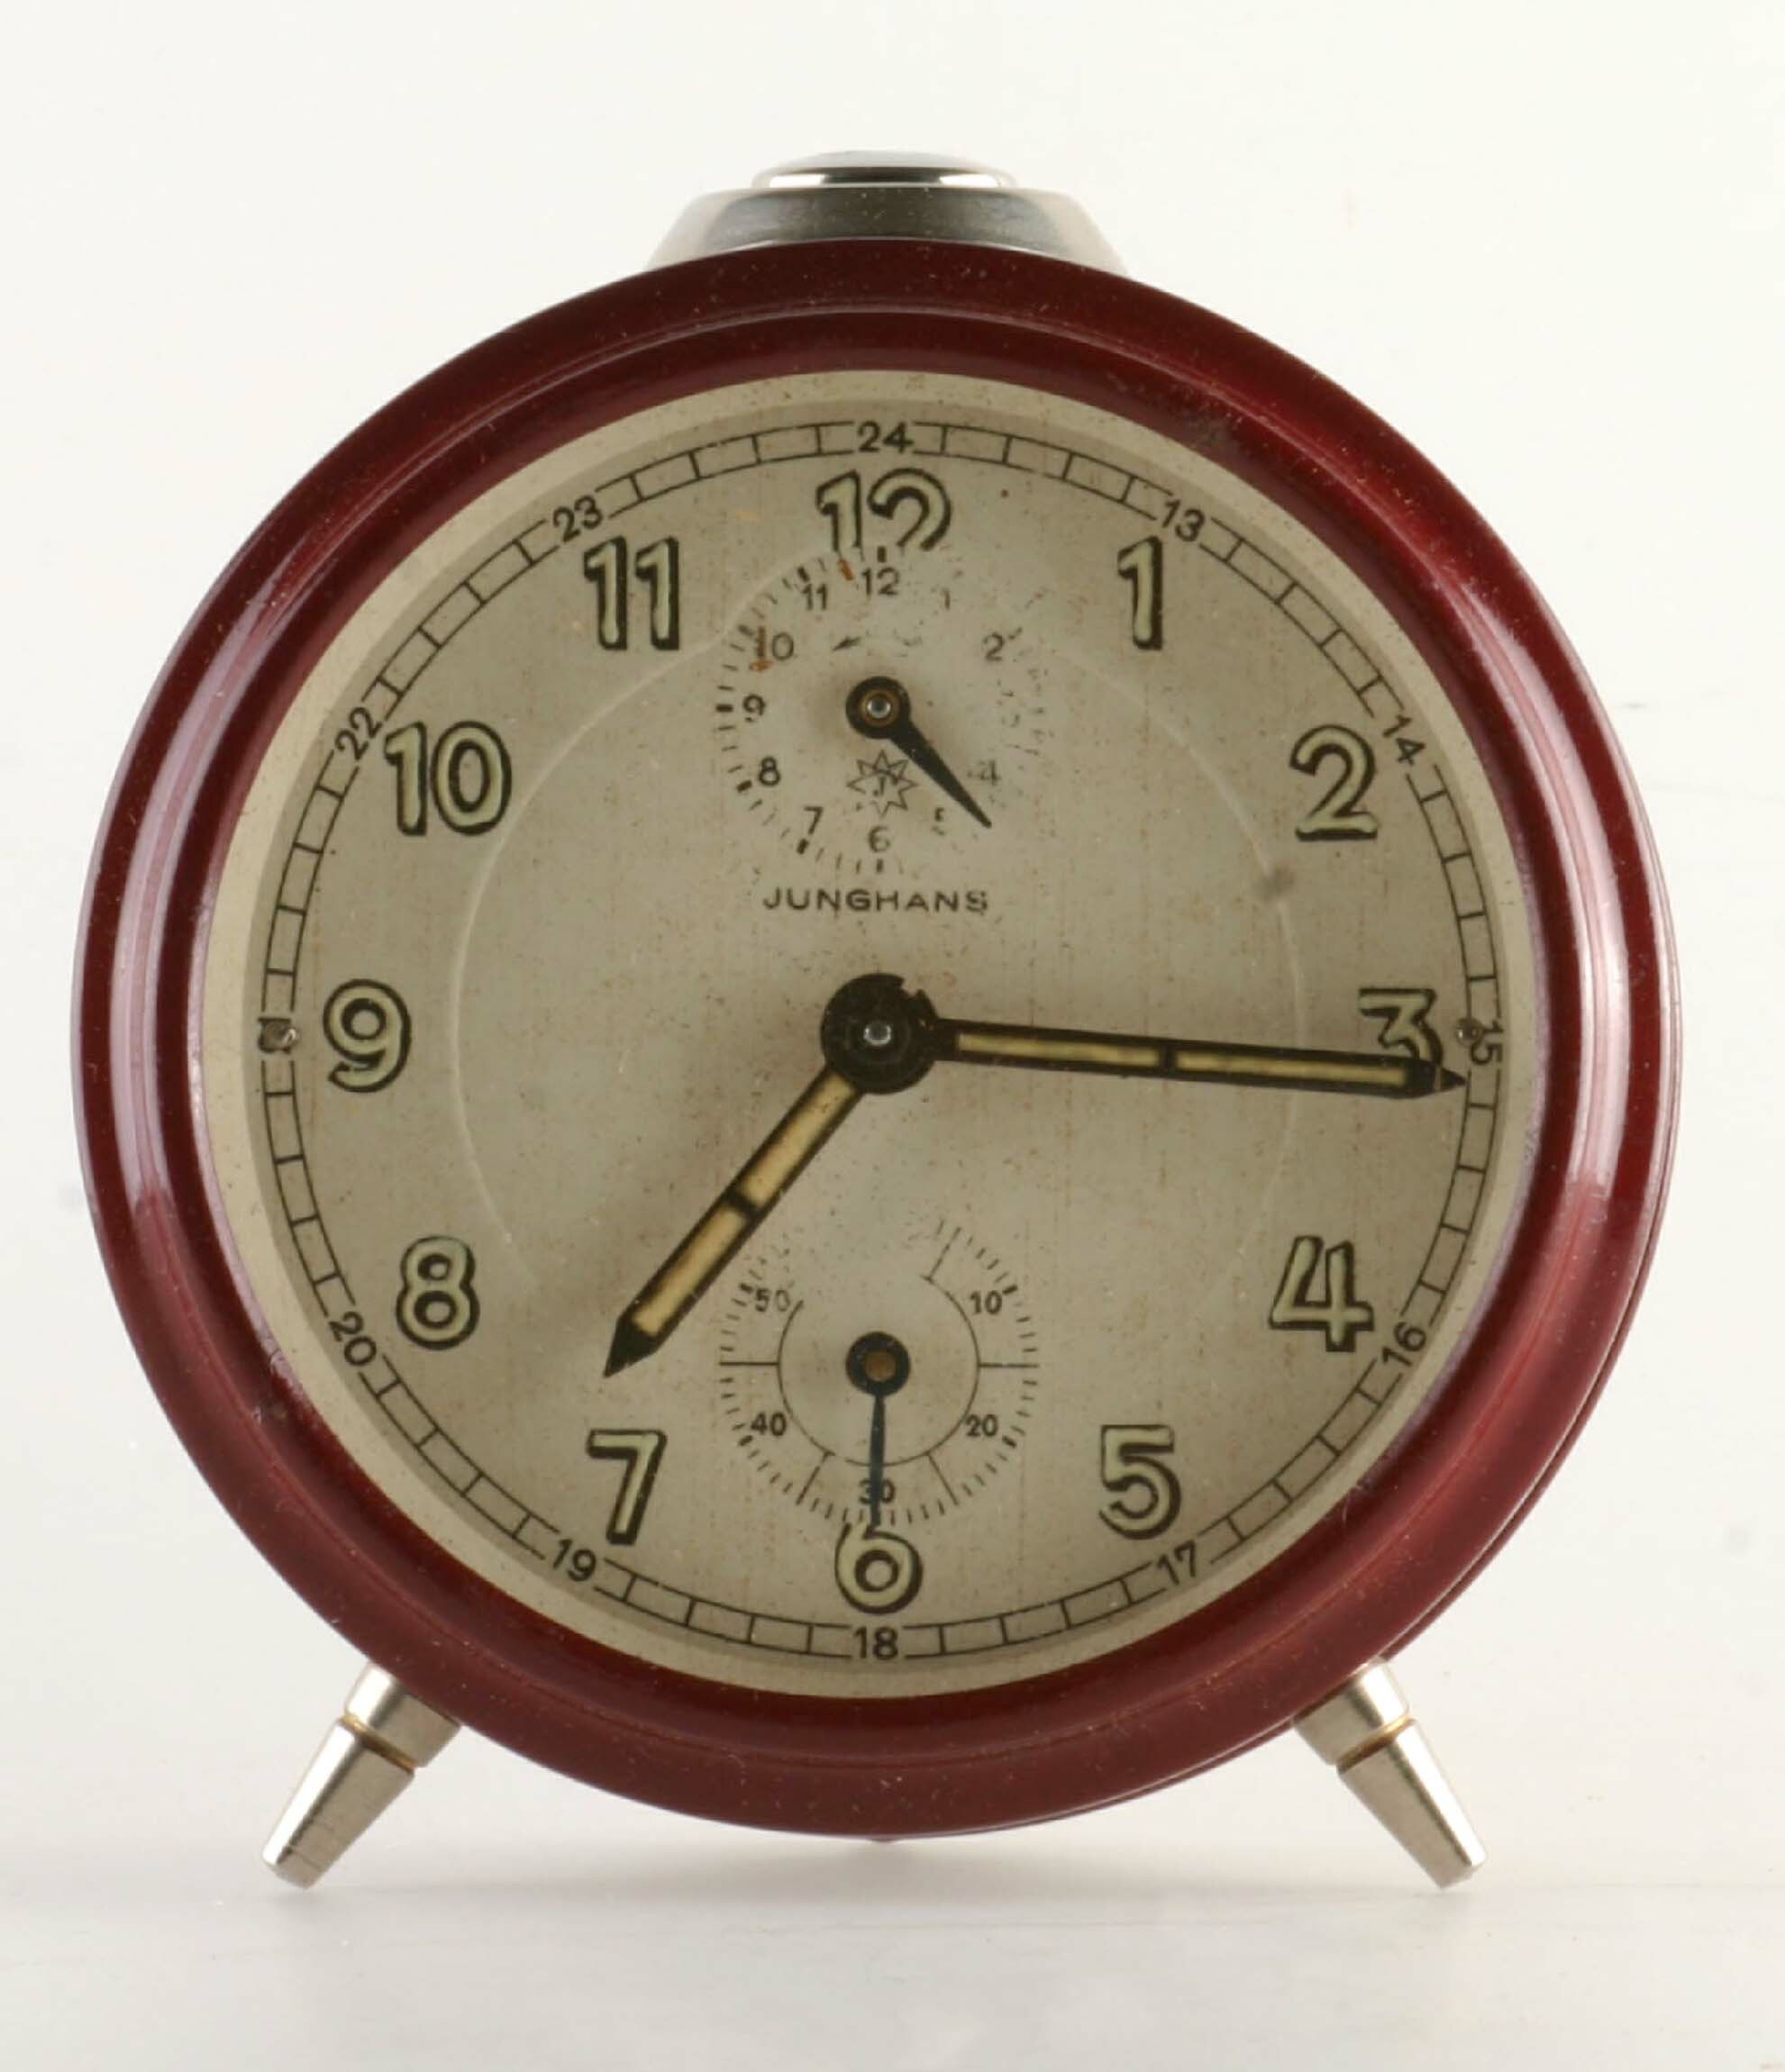 Rückwandglockenwecker, Junghans, Schramberg, um 1935 (Deutsches Uhrenmuseum CC BY-SA)